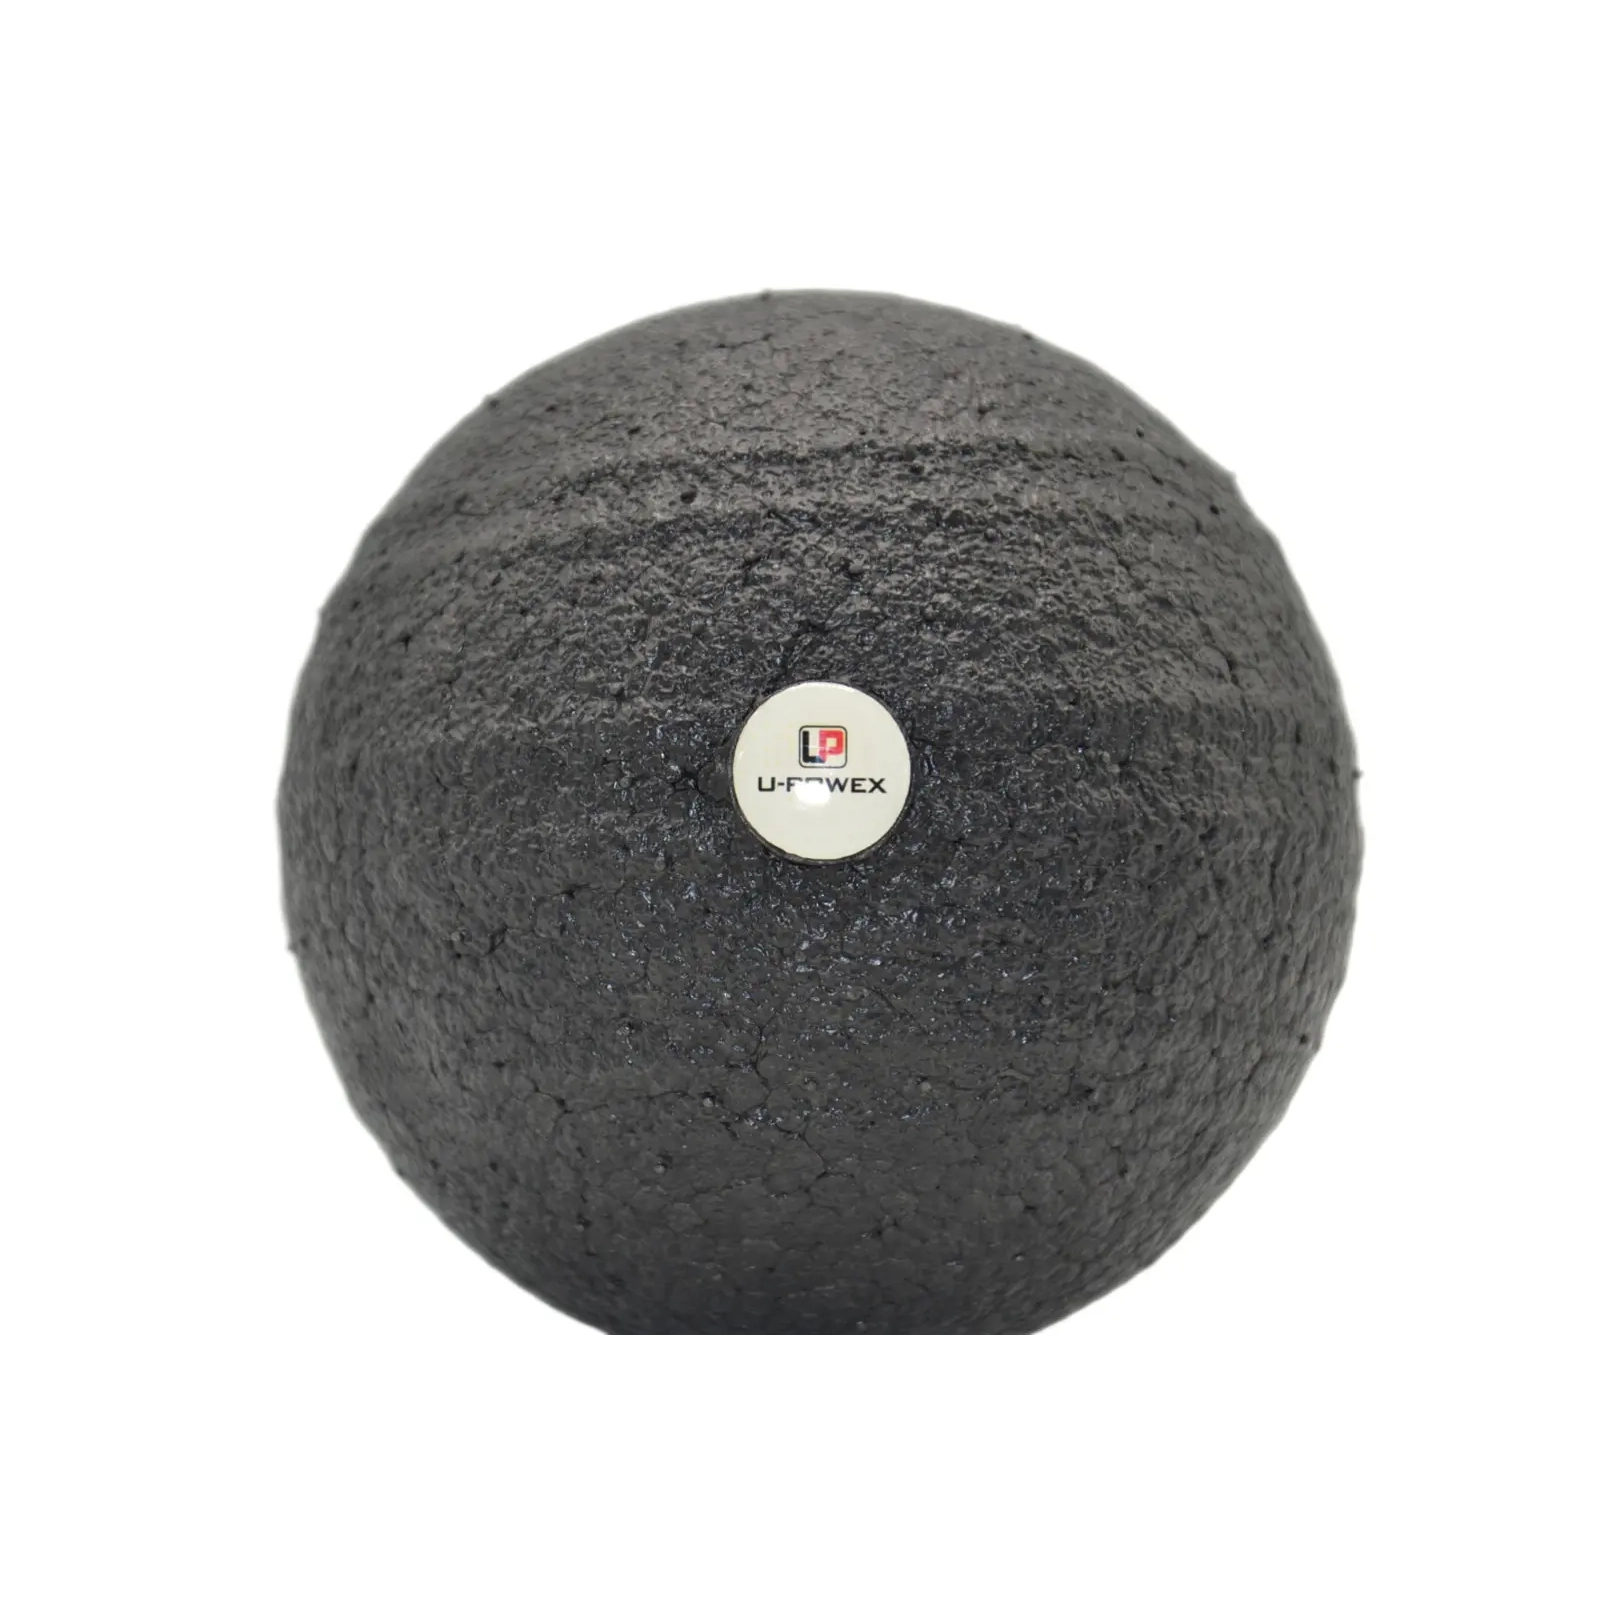 Массажный мяч U-Powex Epp foam ball d8cm Black (UP_1003_Ball_D8cm) изображение 4